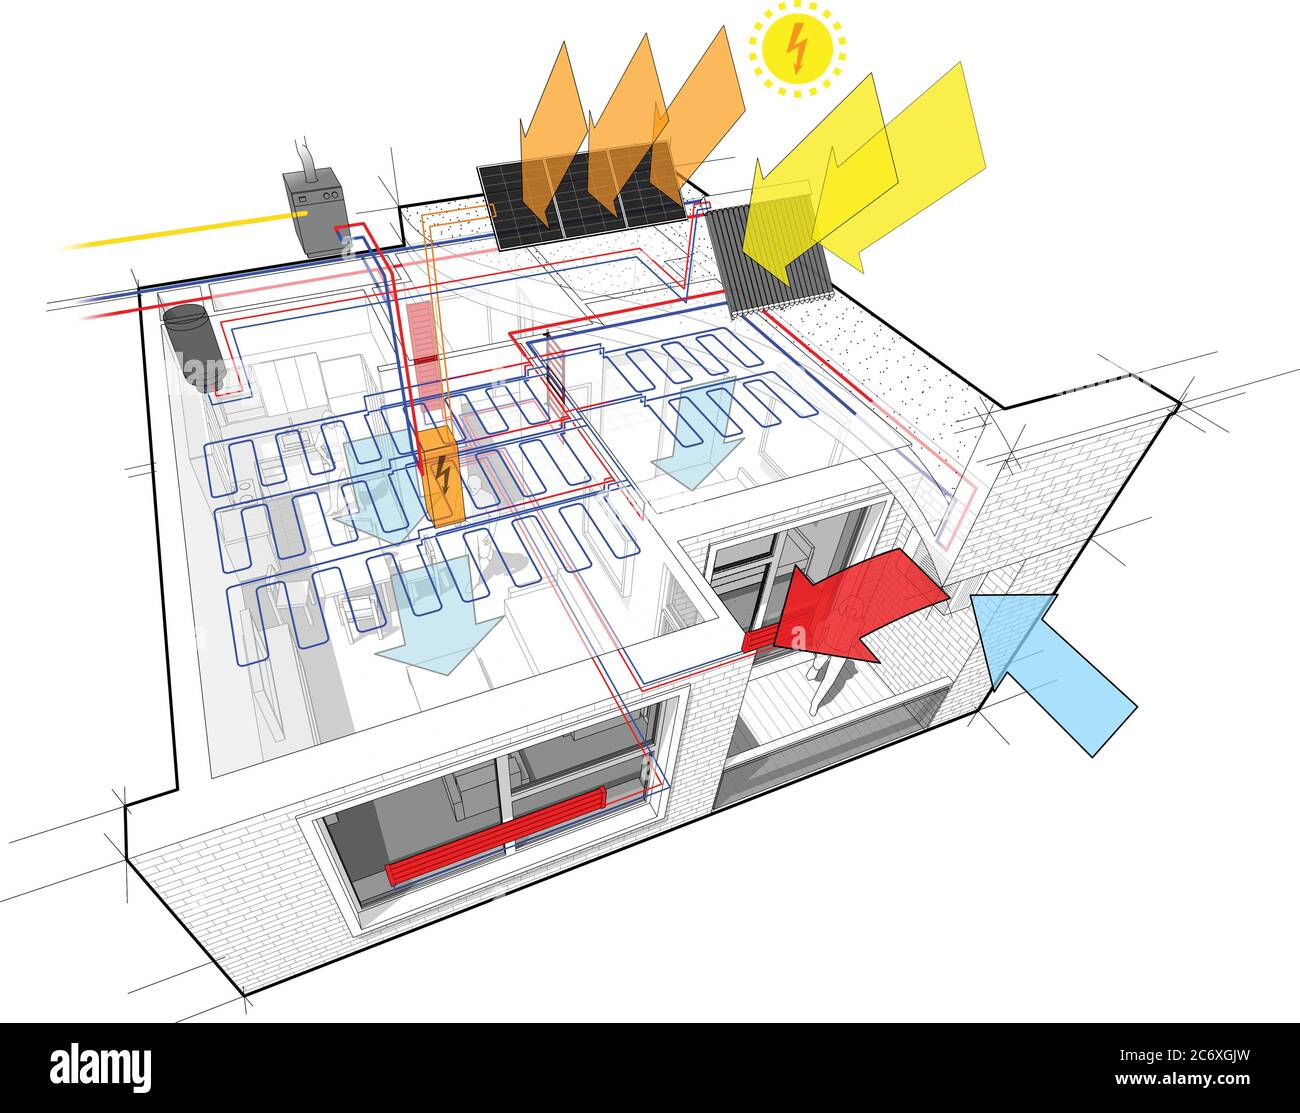 Schema di appartamenti con riscaldamento a radiatore e caldaia a gas, pannelli fotovoltaici e solari e raffreddamento a soffitto Illustrazione Vettoriale